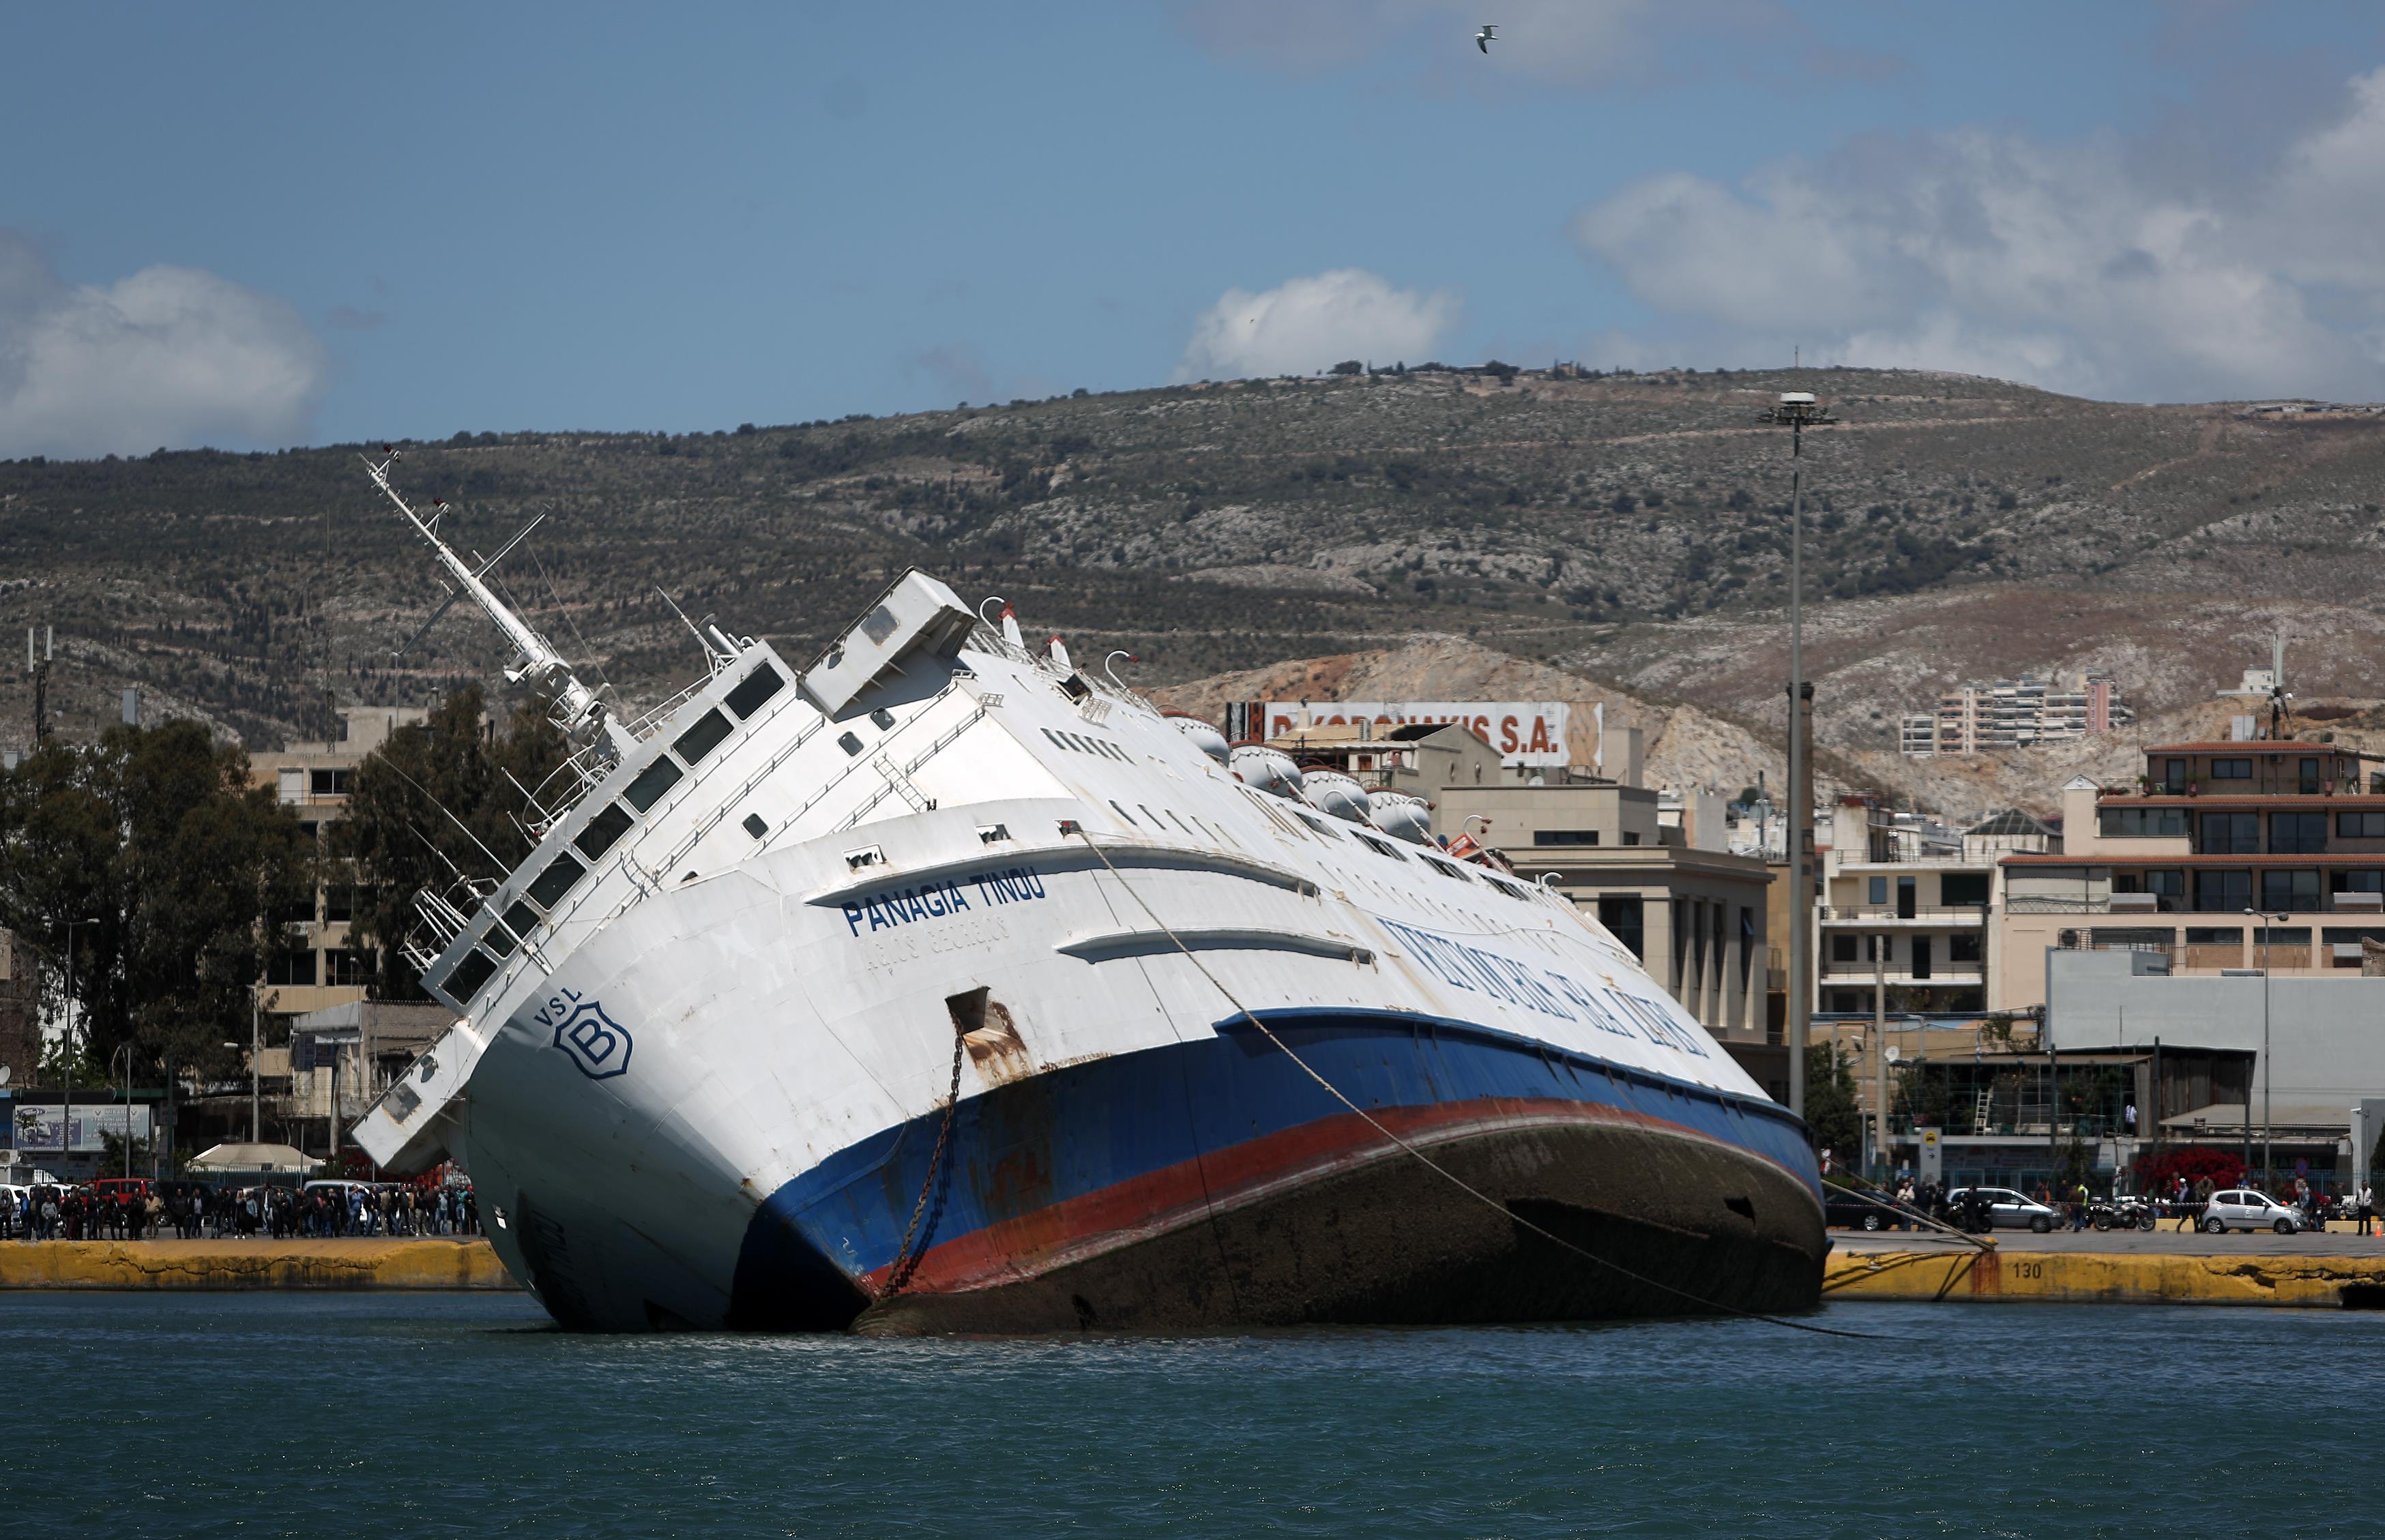 Σε τρεις μήνες απομακρύνεται από το λιμάνι το ημιβυθισμένο «Παναγία Τήνου»